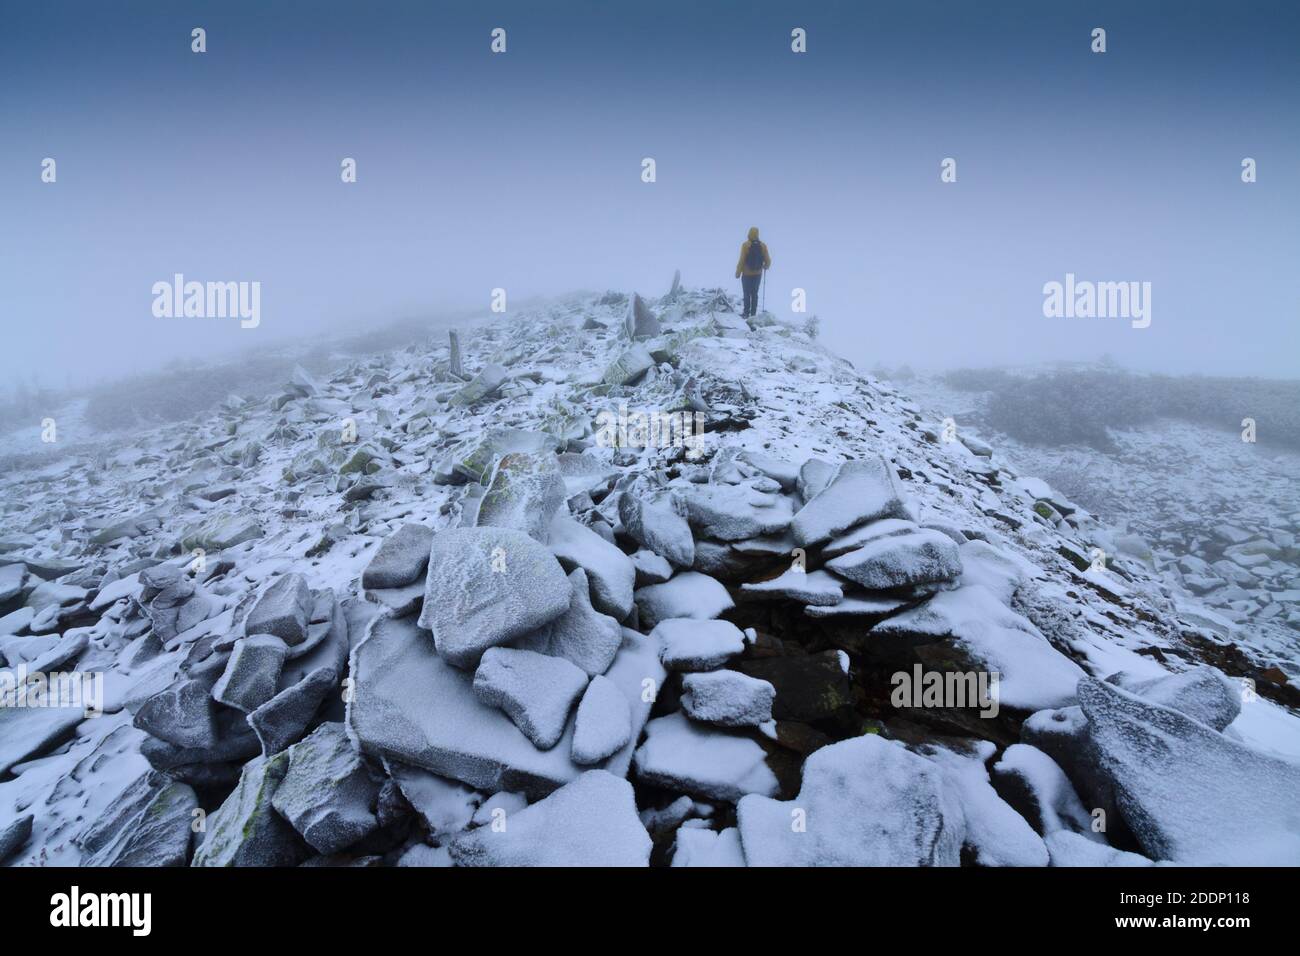 Ein einsamer Wanderer in einer verschneiten Landschaft. Einsamkeit, Berge, Winter, Nebel, Schnee. Stockfoto